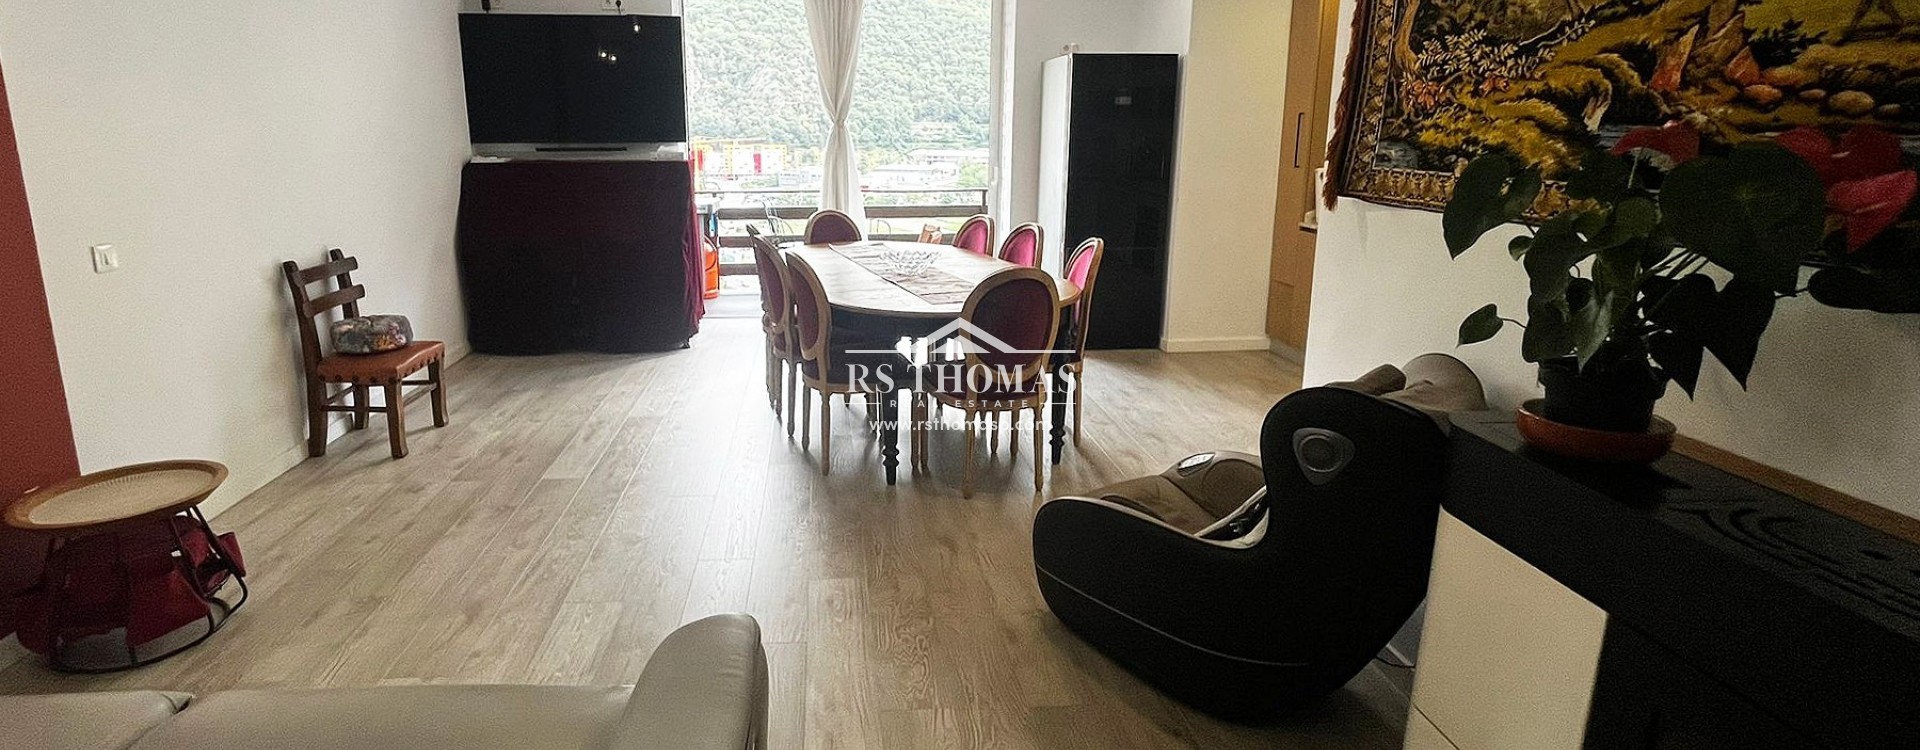 Apartment for rent in Andorra la Vella